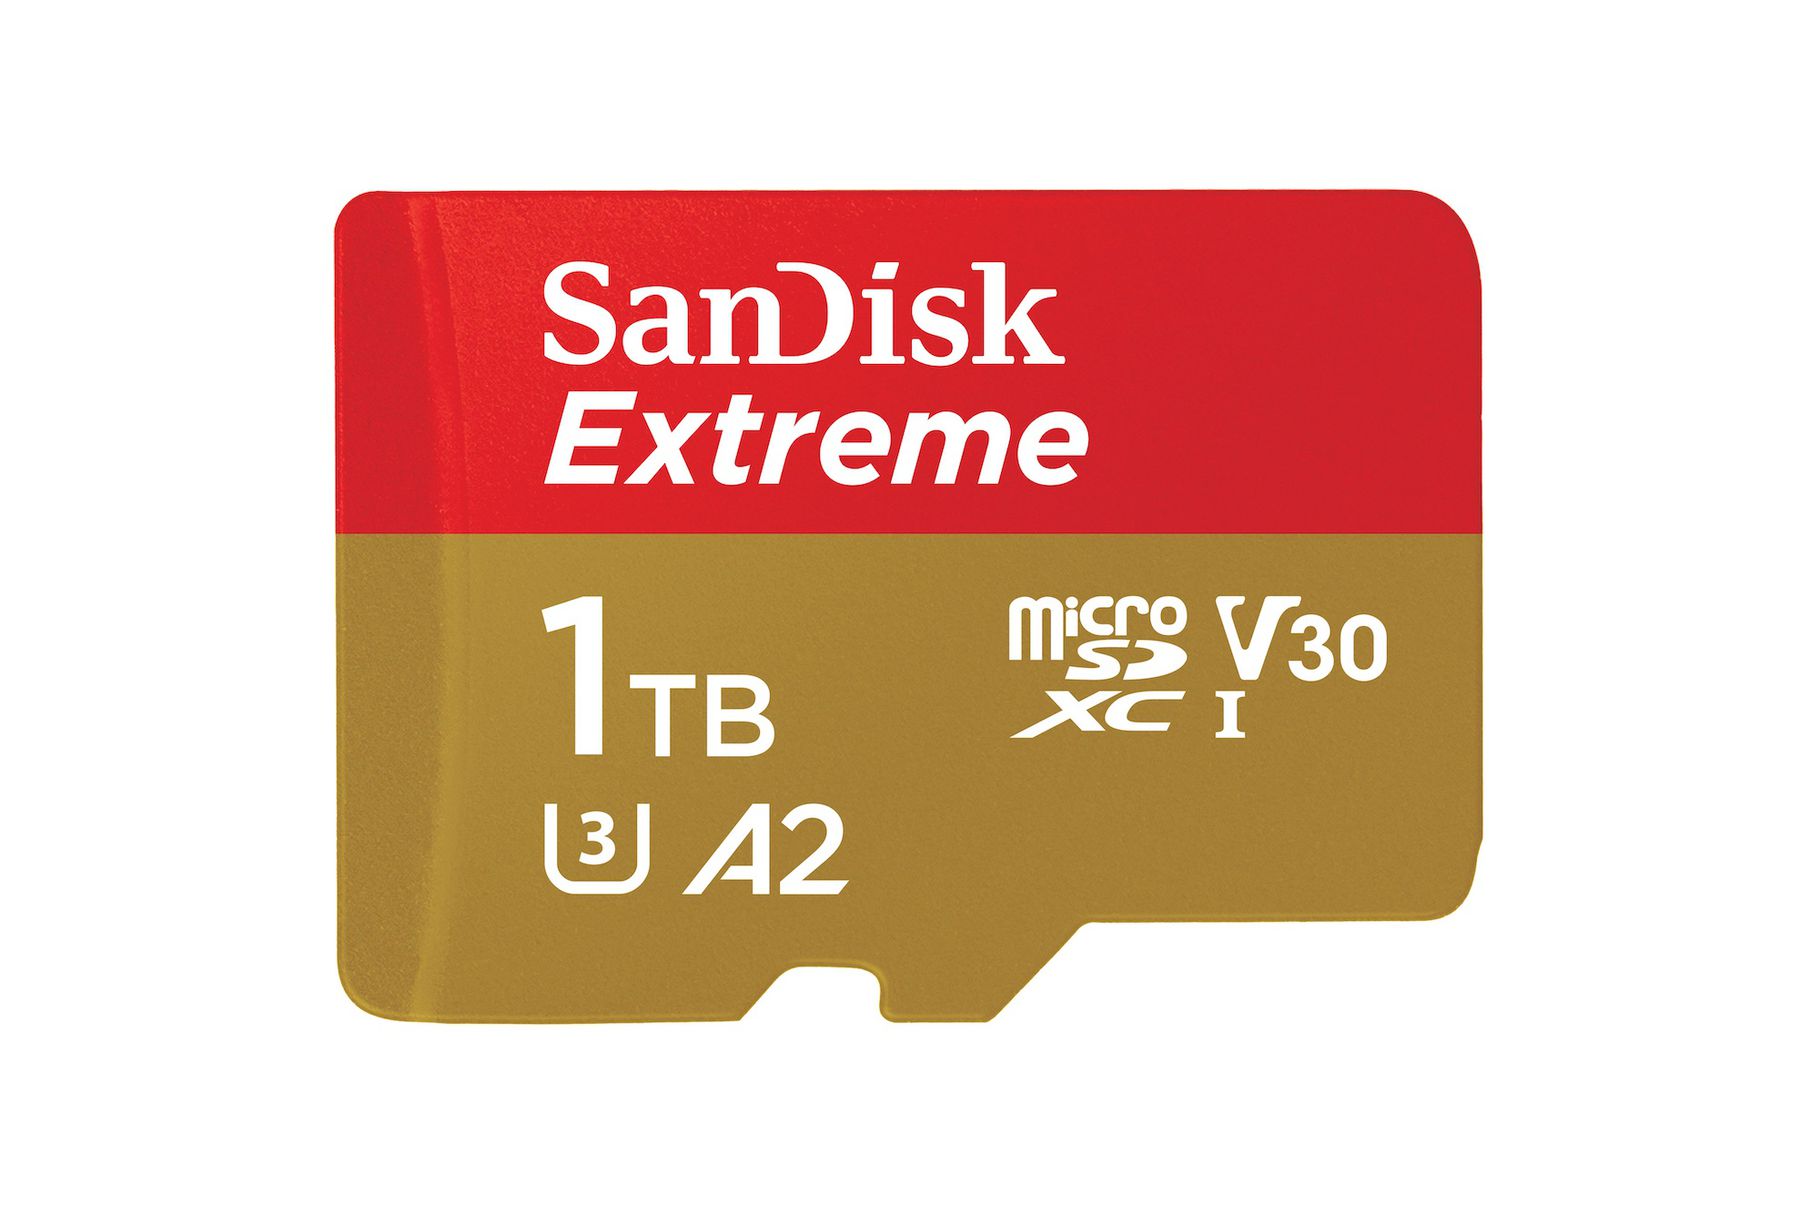 Nếu bạn không thích Samsung thì SanDisk hiện đã bán ra thẻ microSD 1TB